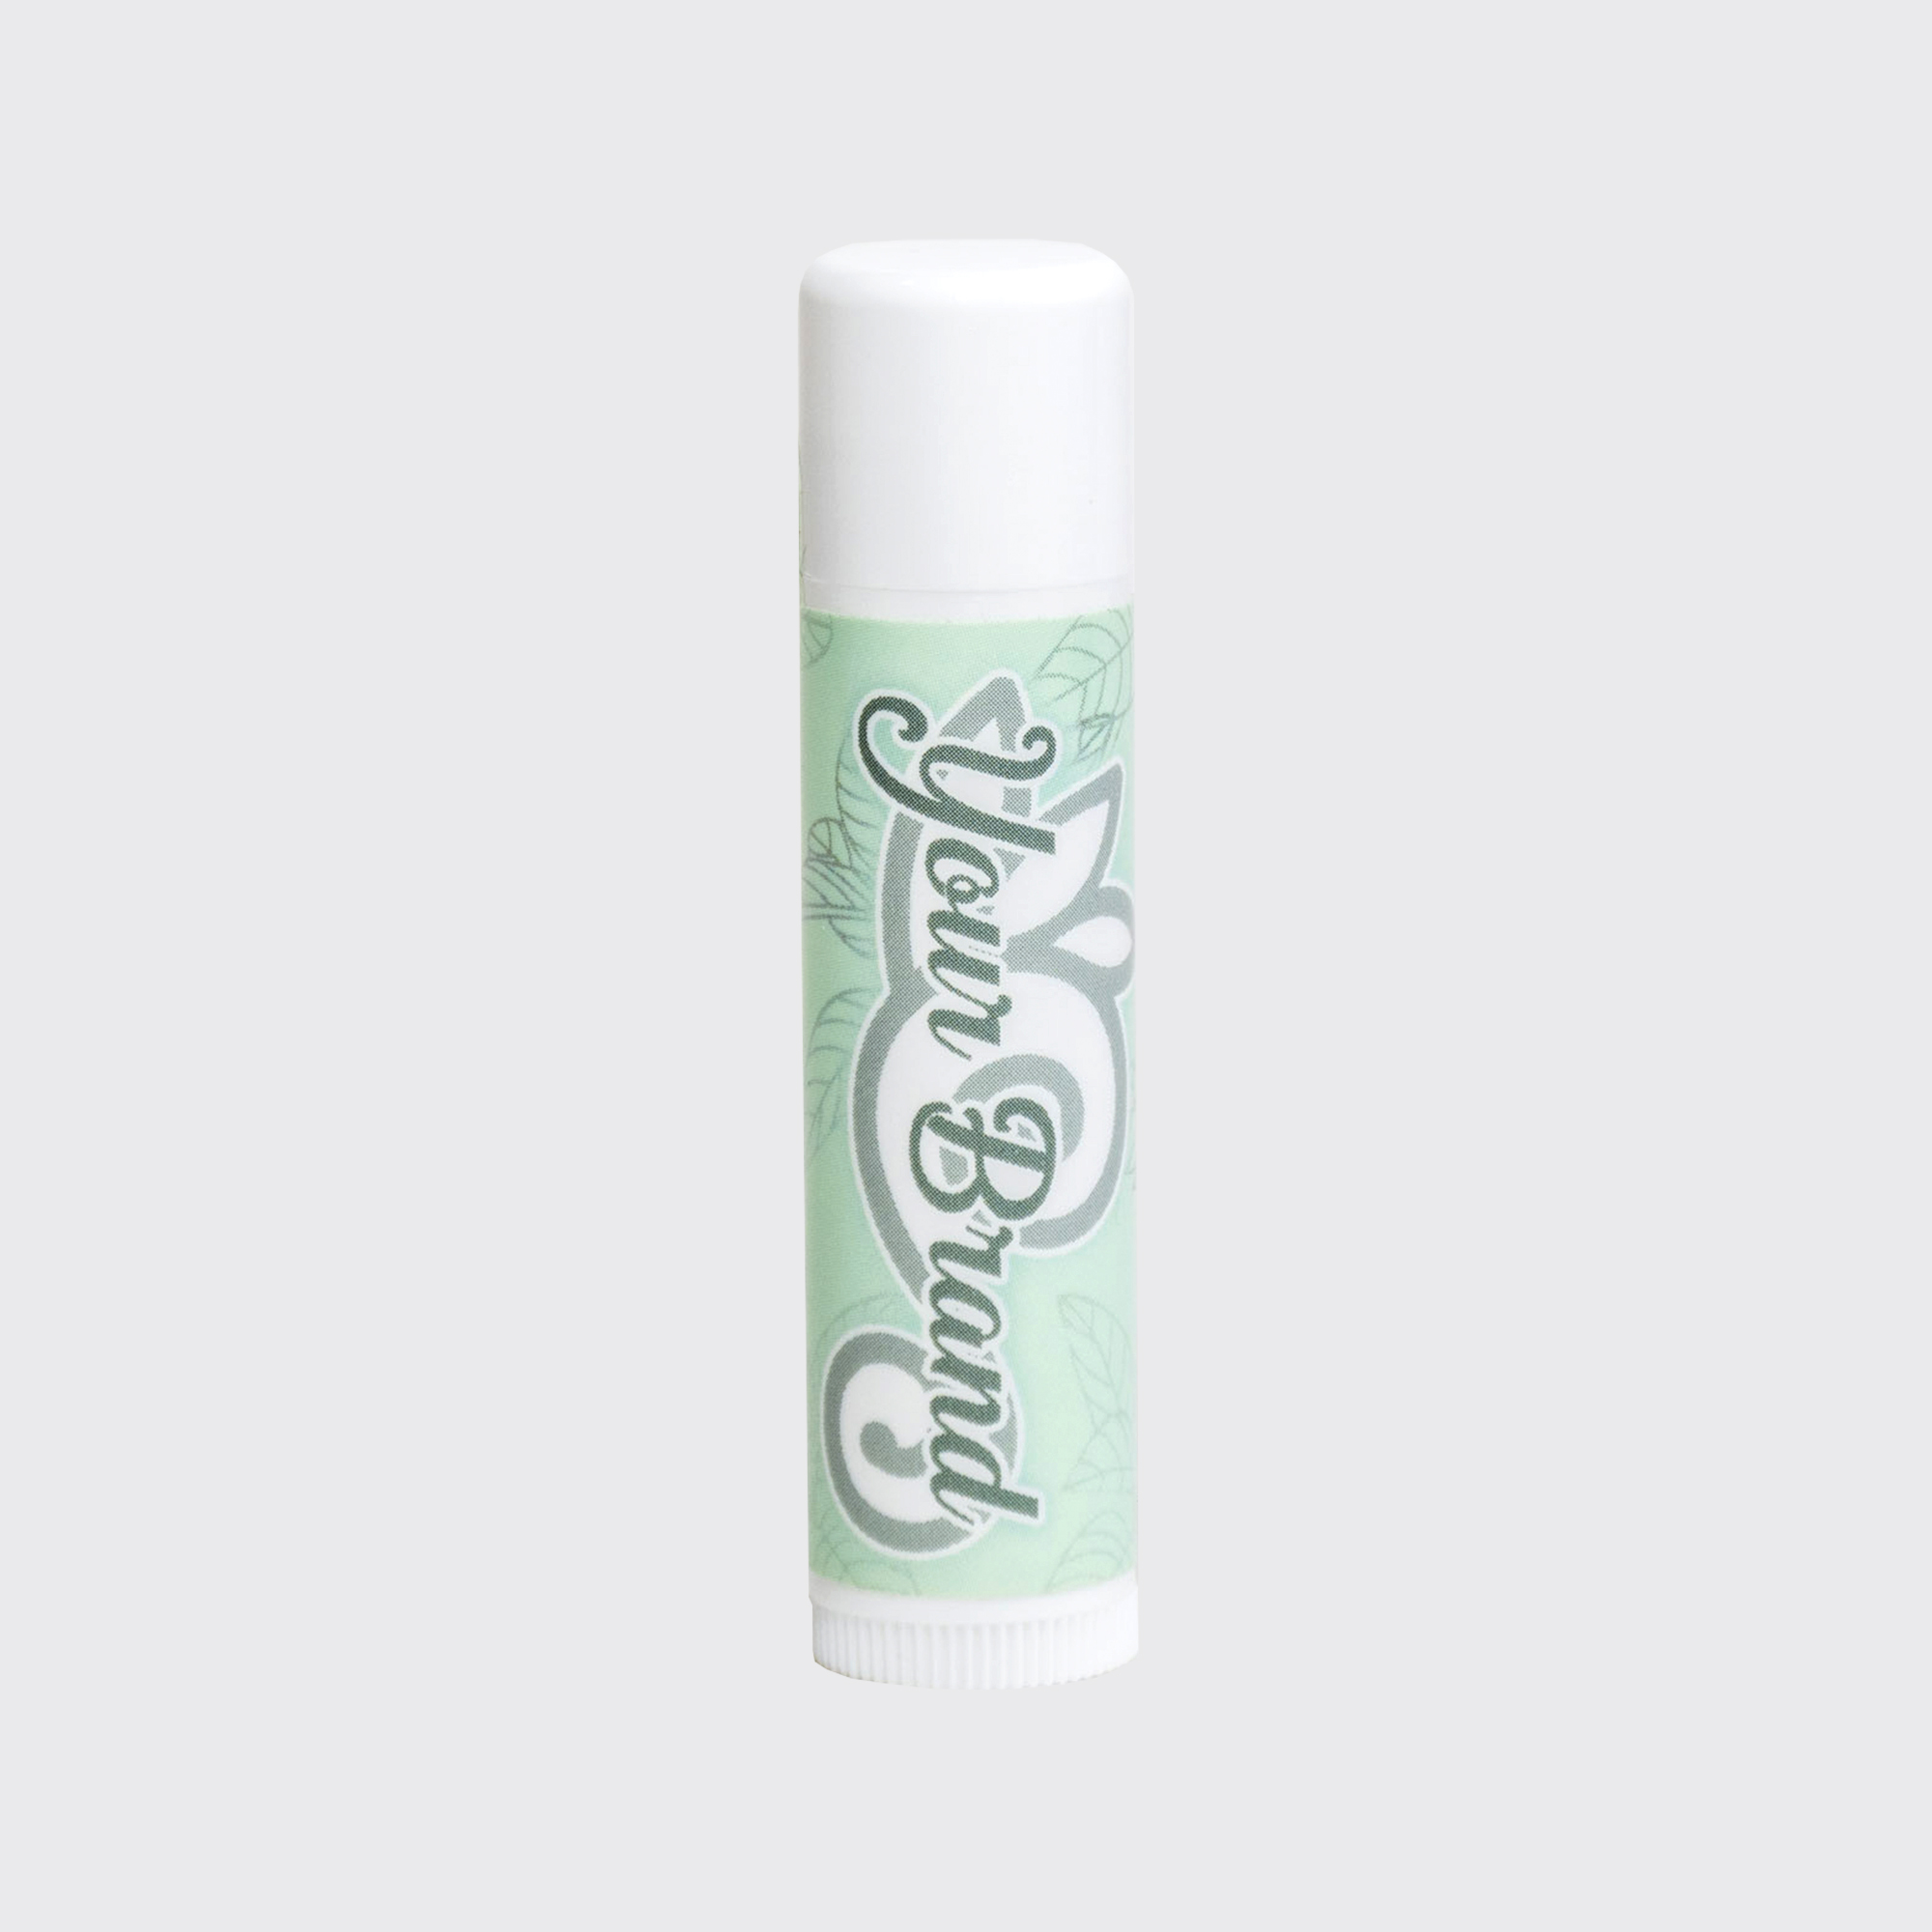 white cap lip balm mint green label